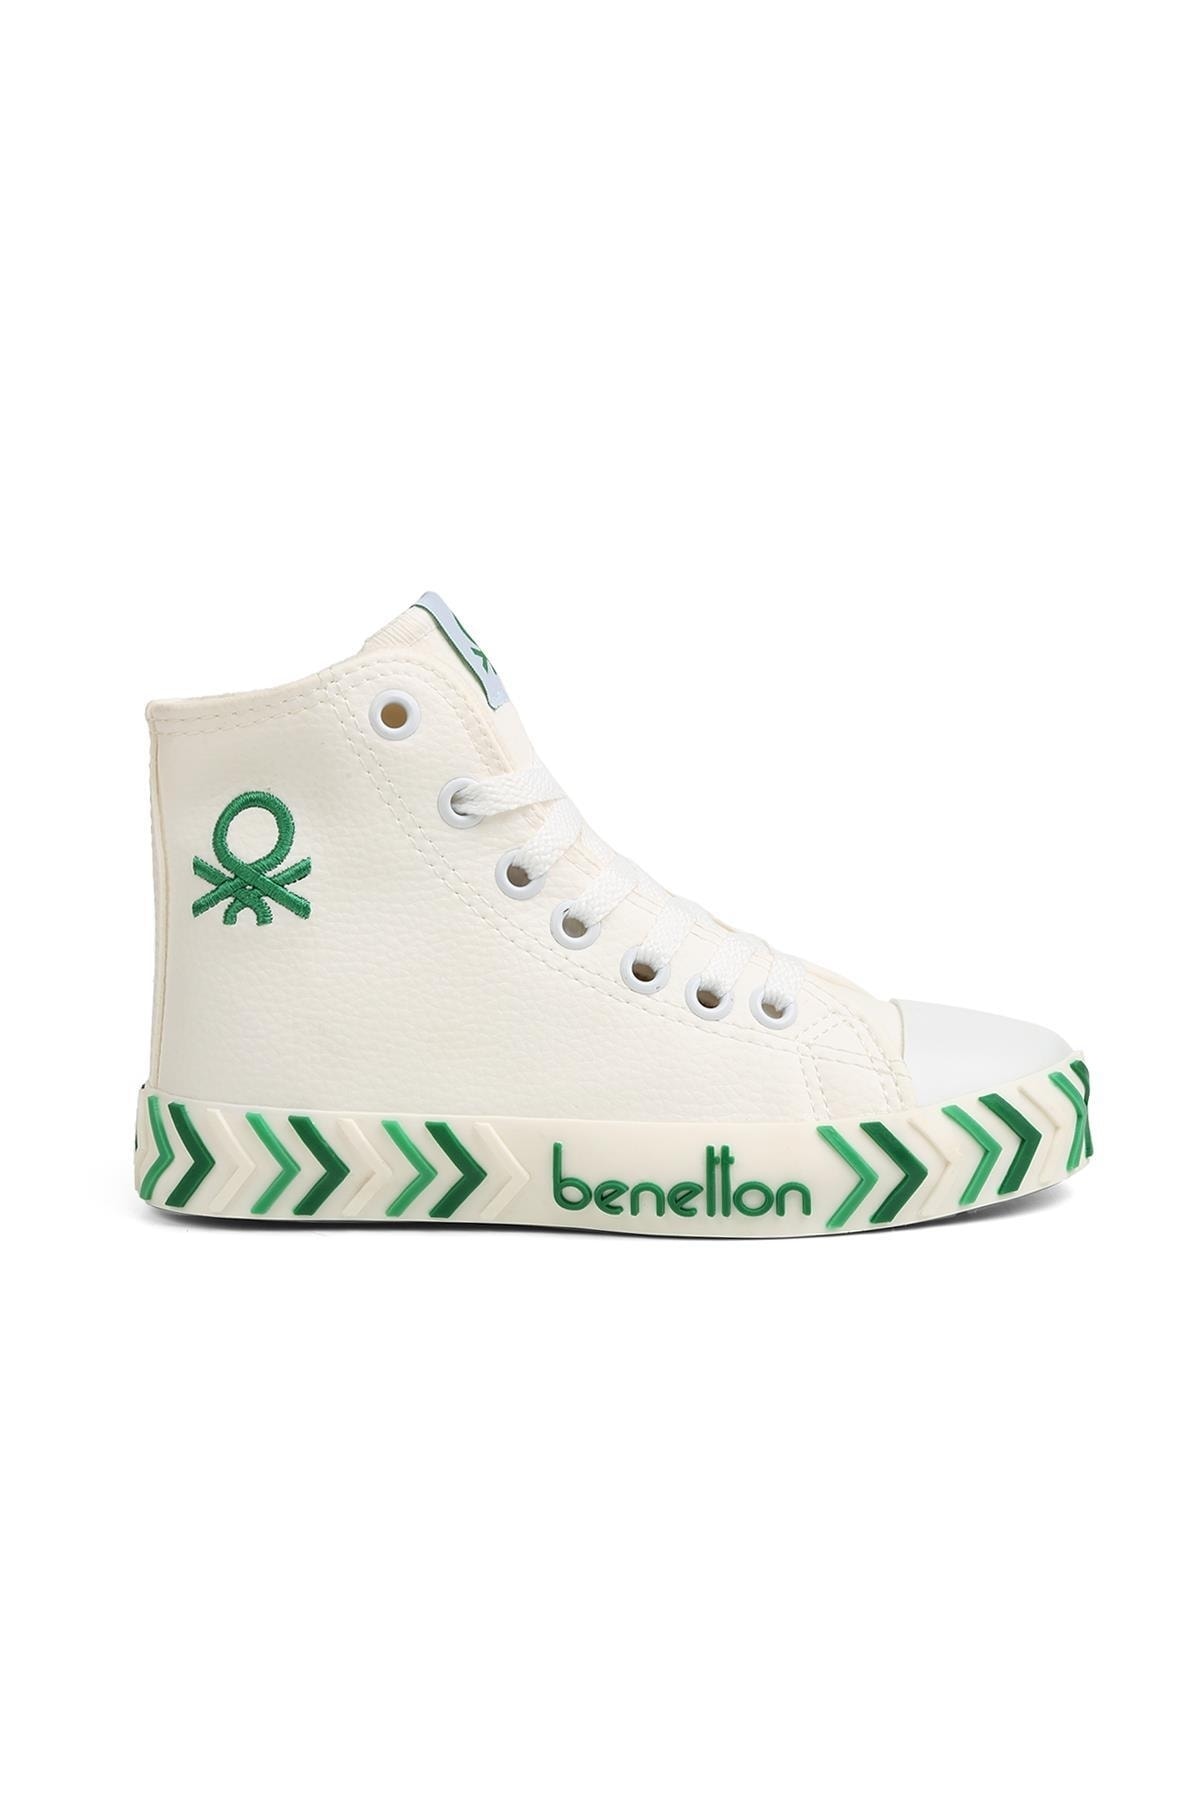 Benetton ® | Bn-30744 - 3374 Beyaz Yeşil - Çocuk Spor Ayakkabı